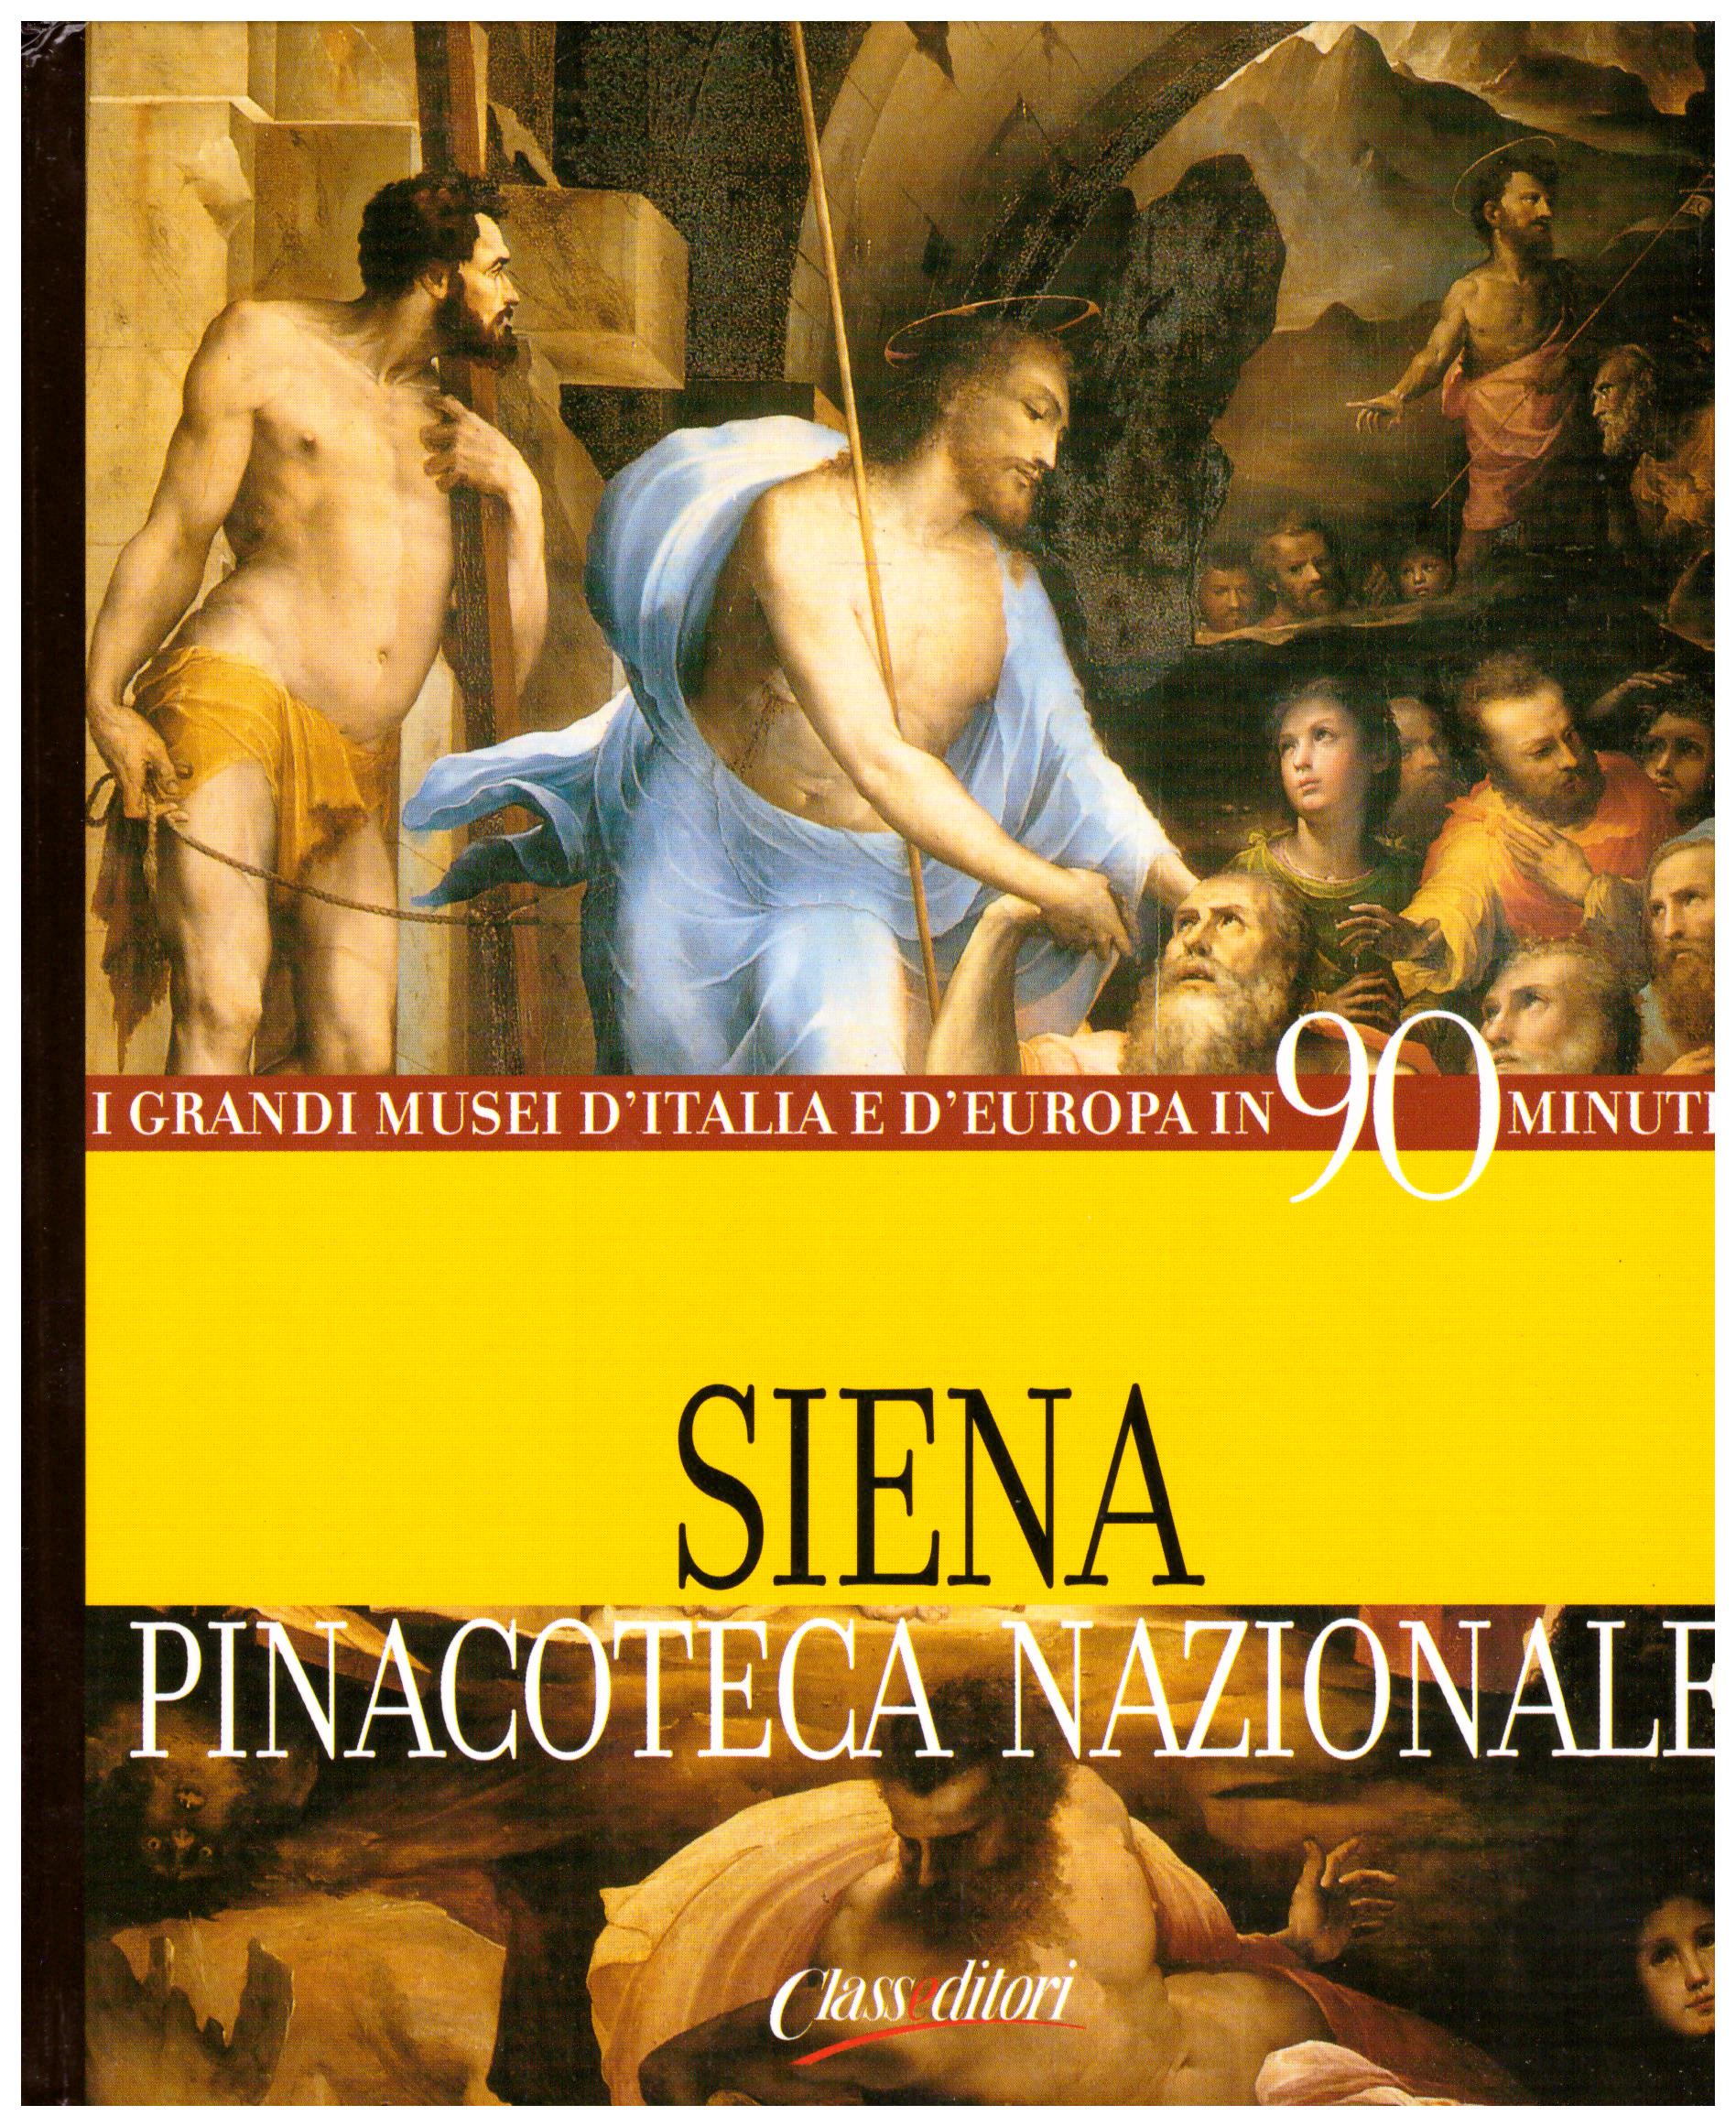 Titolo: I grandi musei d'italia e d'Europa in 90 minuti, Siena Pinacoteca Nazionale Autore : AA.VV.  Editore: class editori